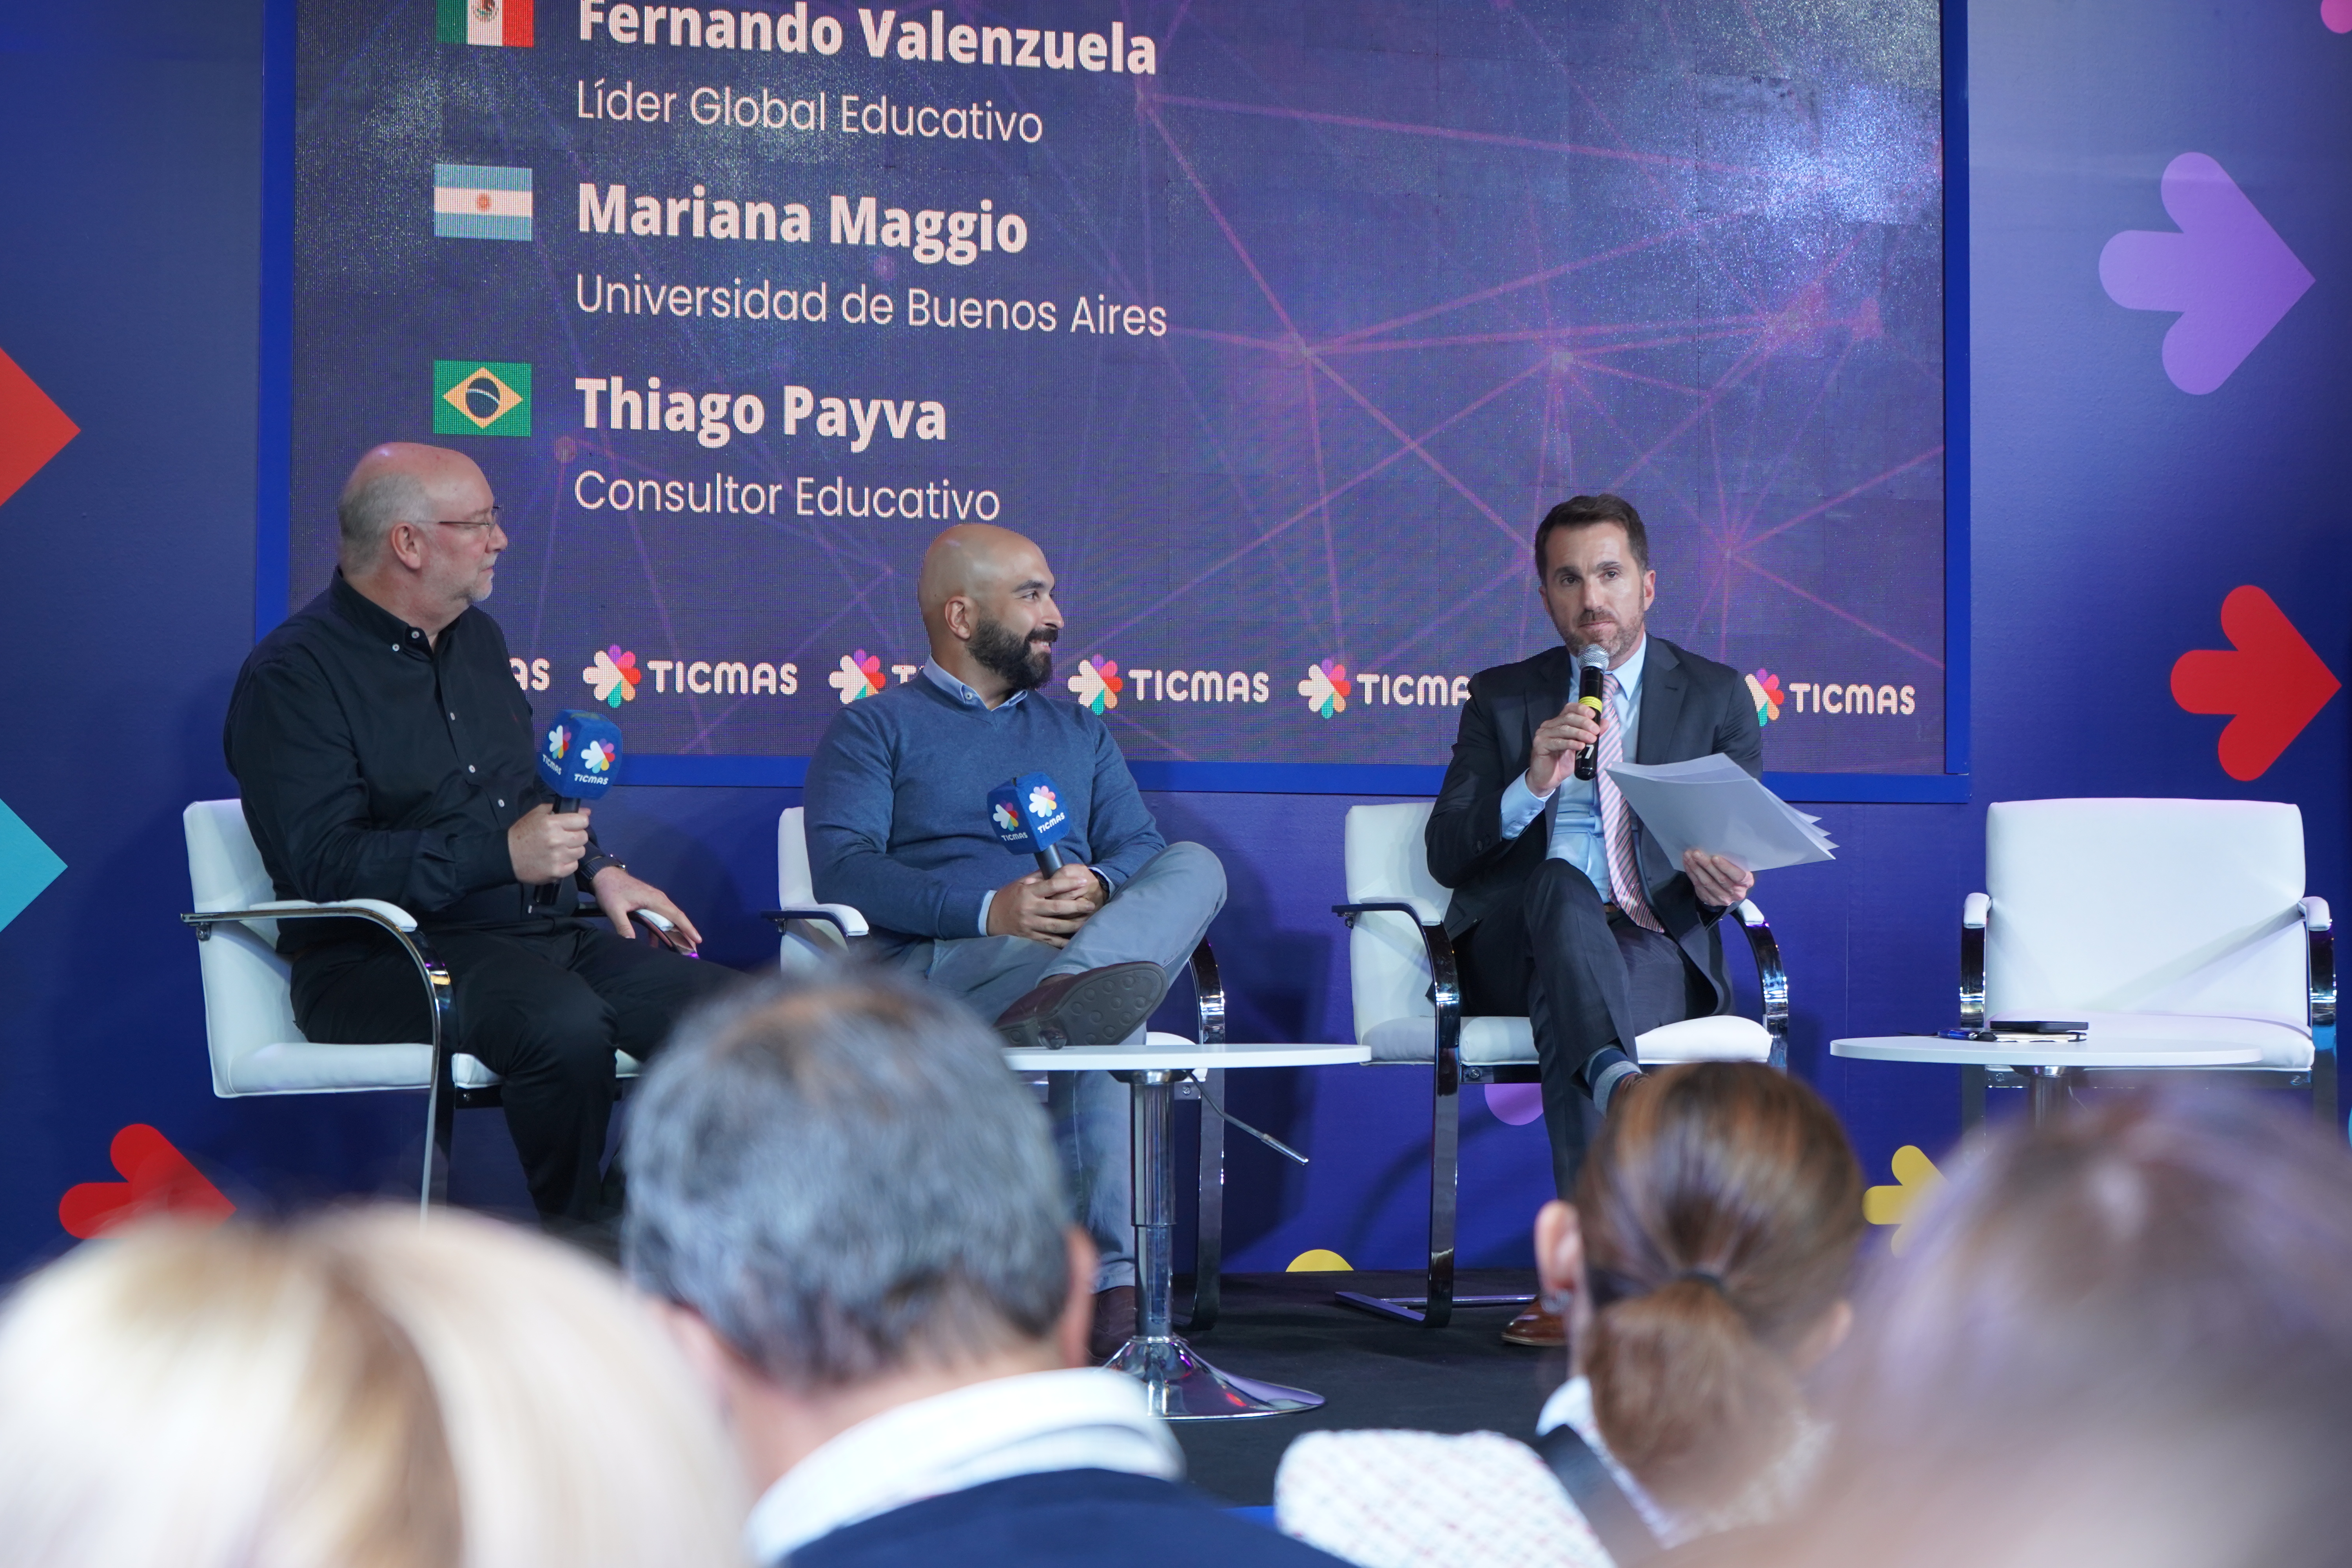 Fernando Valenzuela, Thiago Payva y los desafíos para modernizar realmente la educación